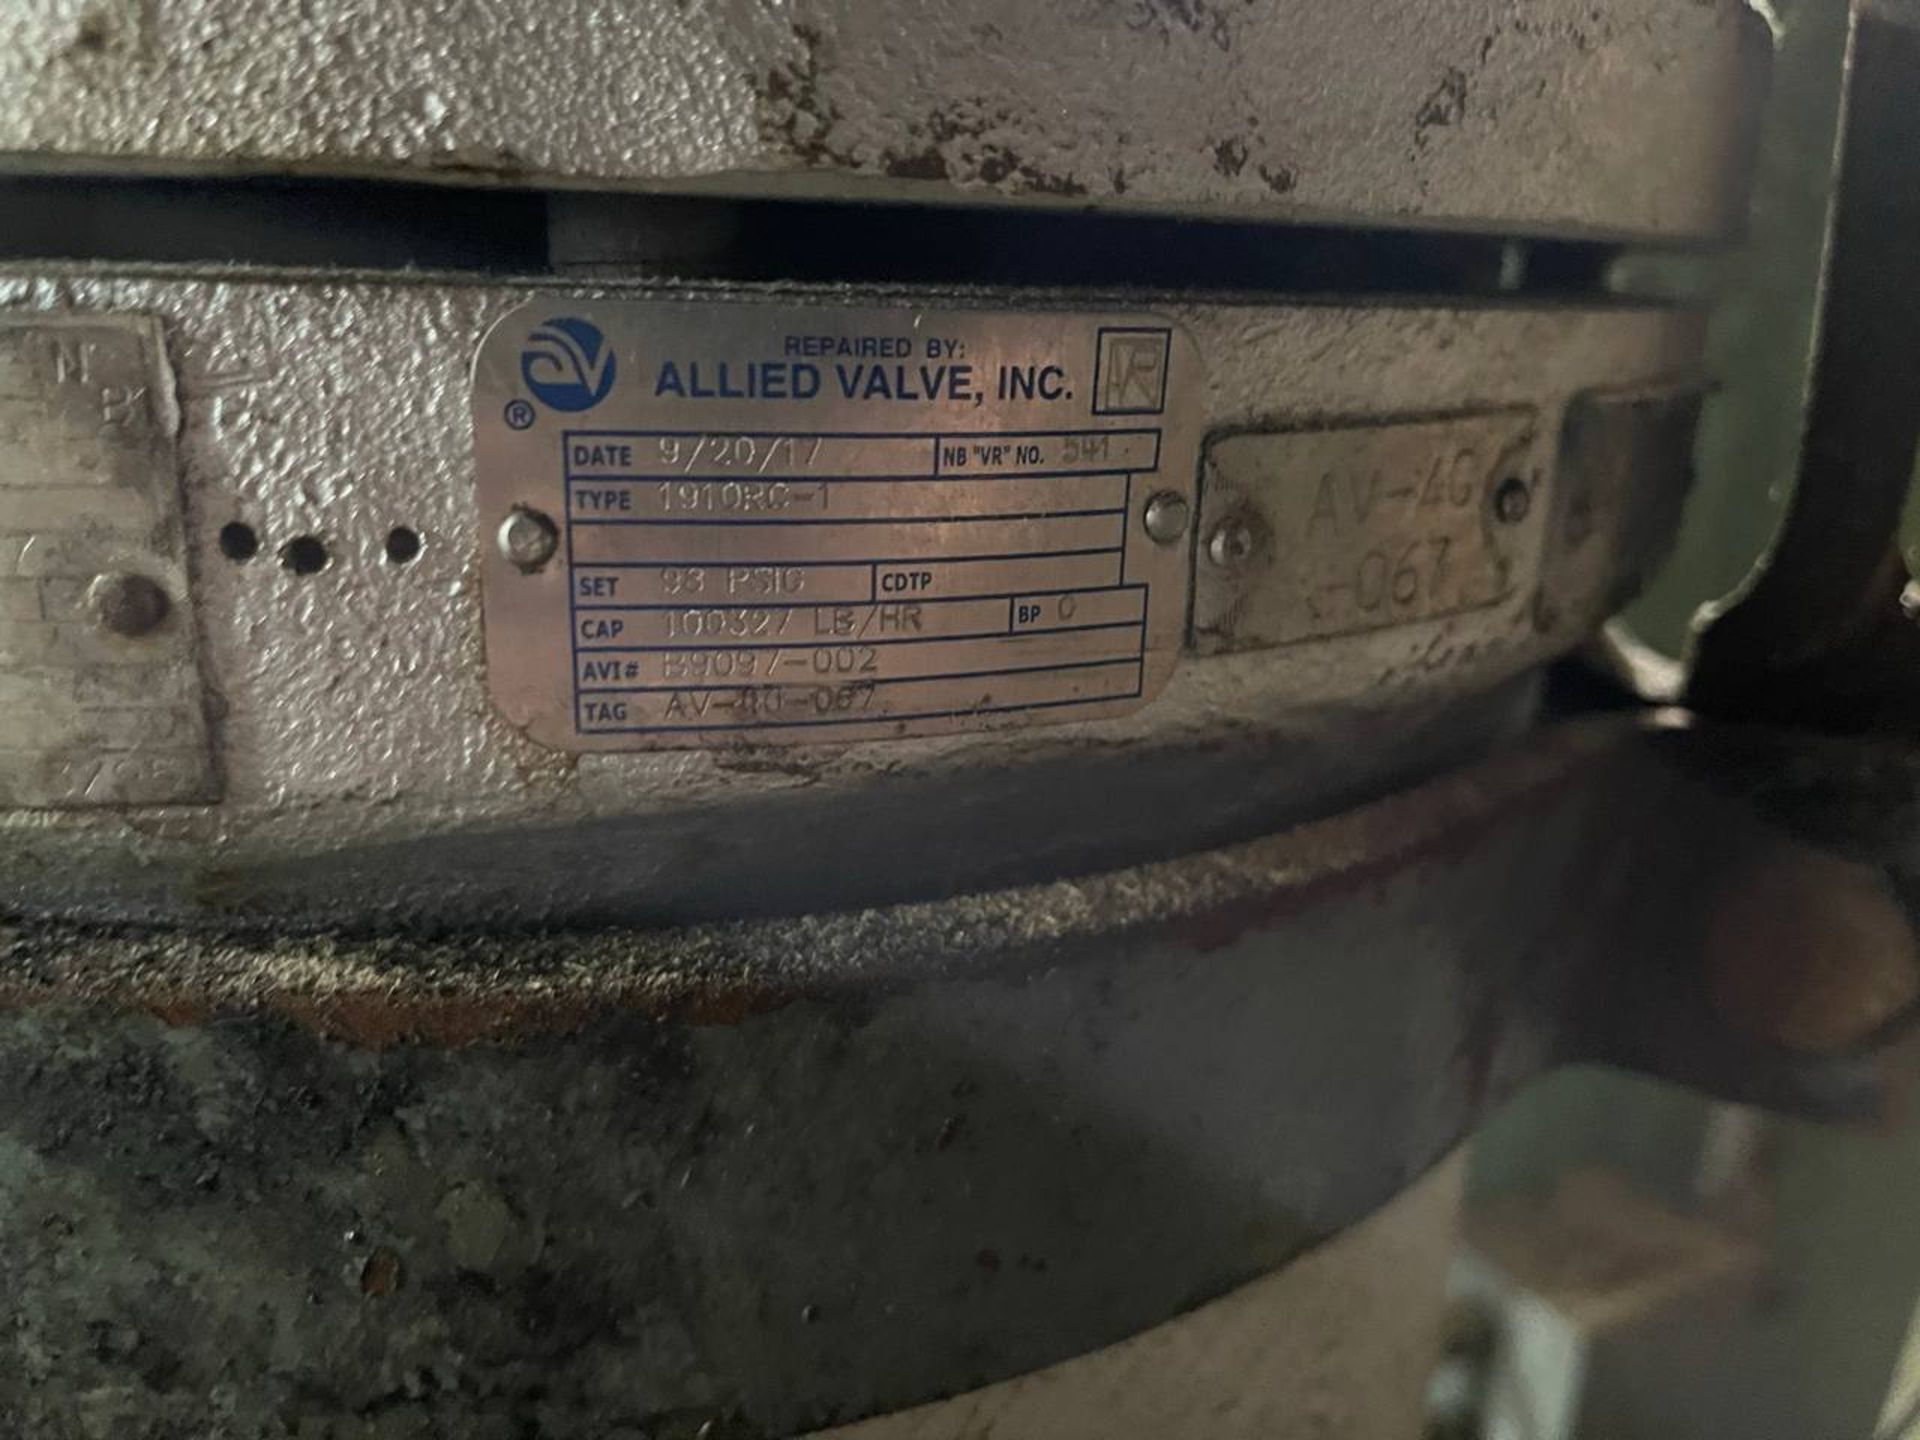 Allied Valve, Inc. Acid Boiler Valve - Image 6 of 8